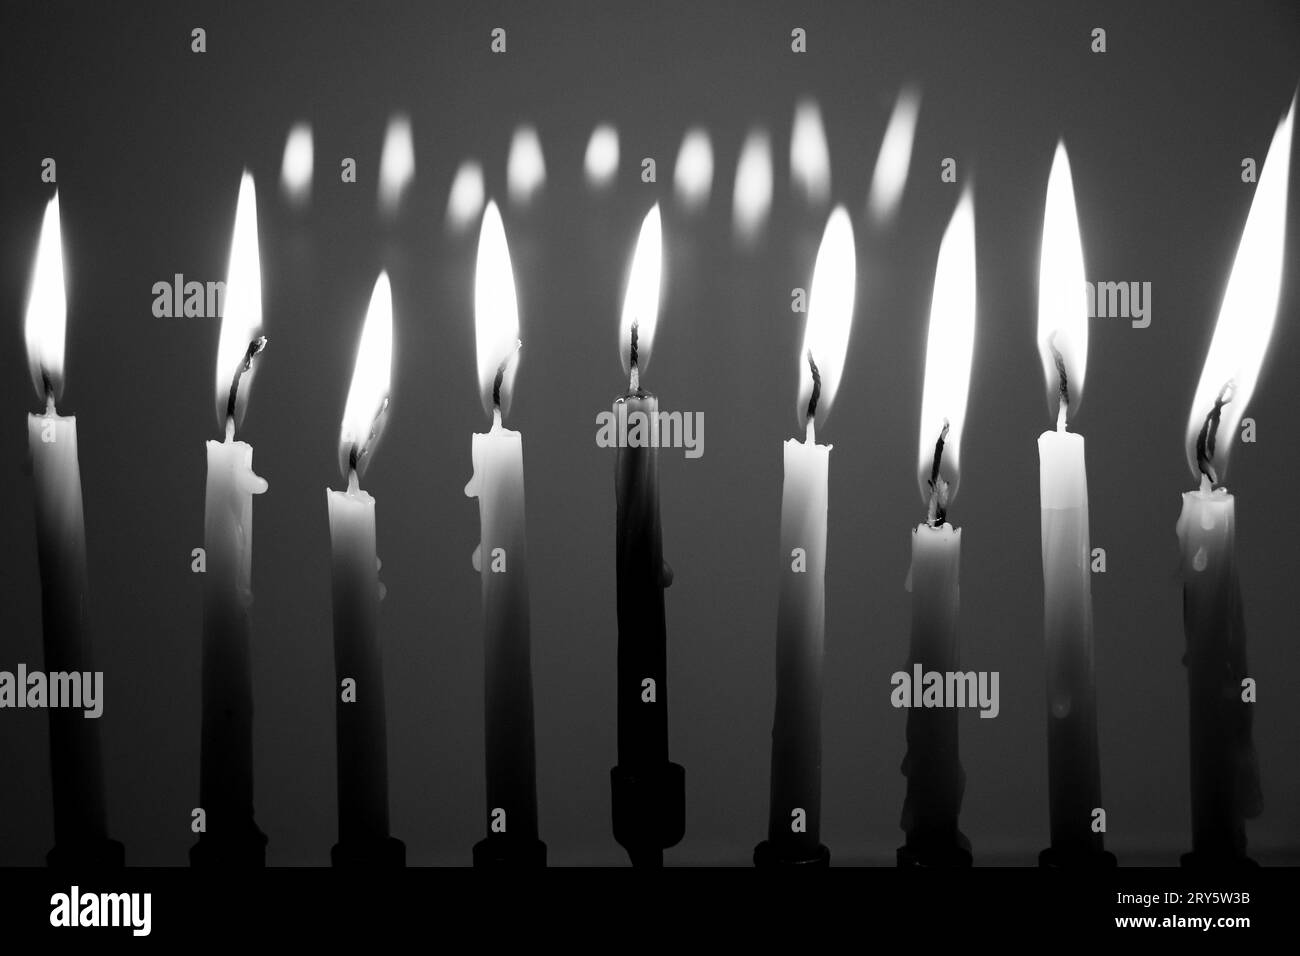 Schwarz-weiß volle Menora am letzten Abend von Hanukka. Alle neun Kerzen werden in einem dunklen Raum beleuchtet und spiegeln sich im Hintergrund. Urlaubskonzept Stockfoto